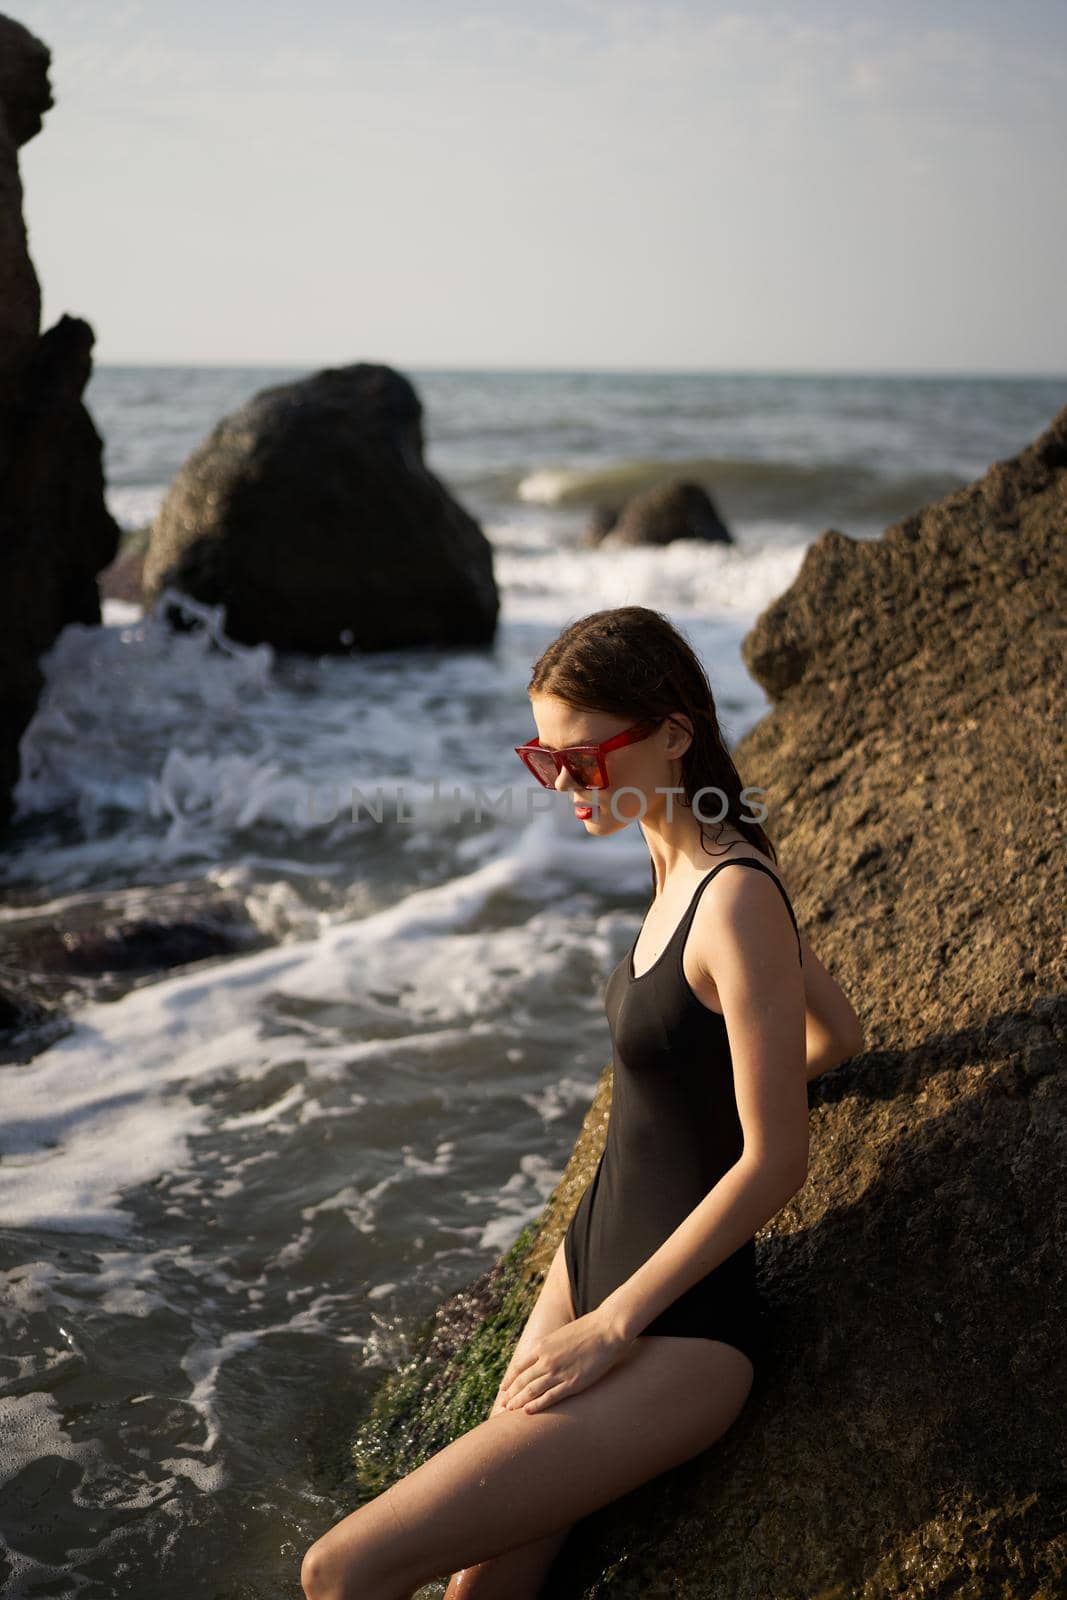 woman in swimsuit sunglasses ocean rocks posing by Vichizh